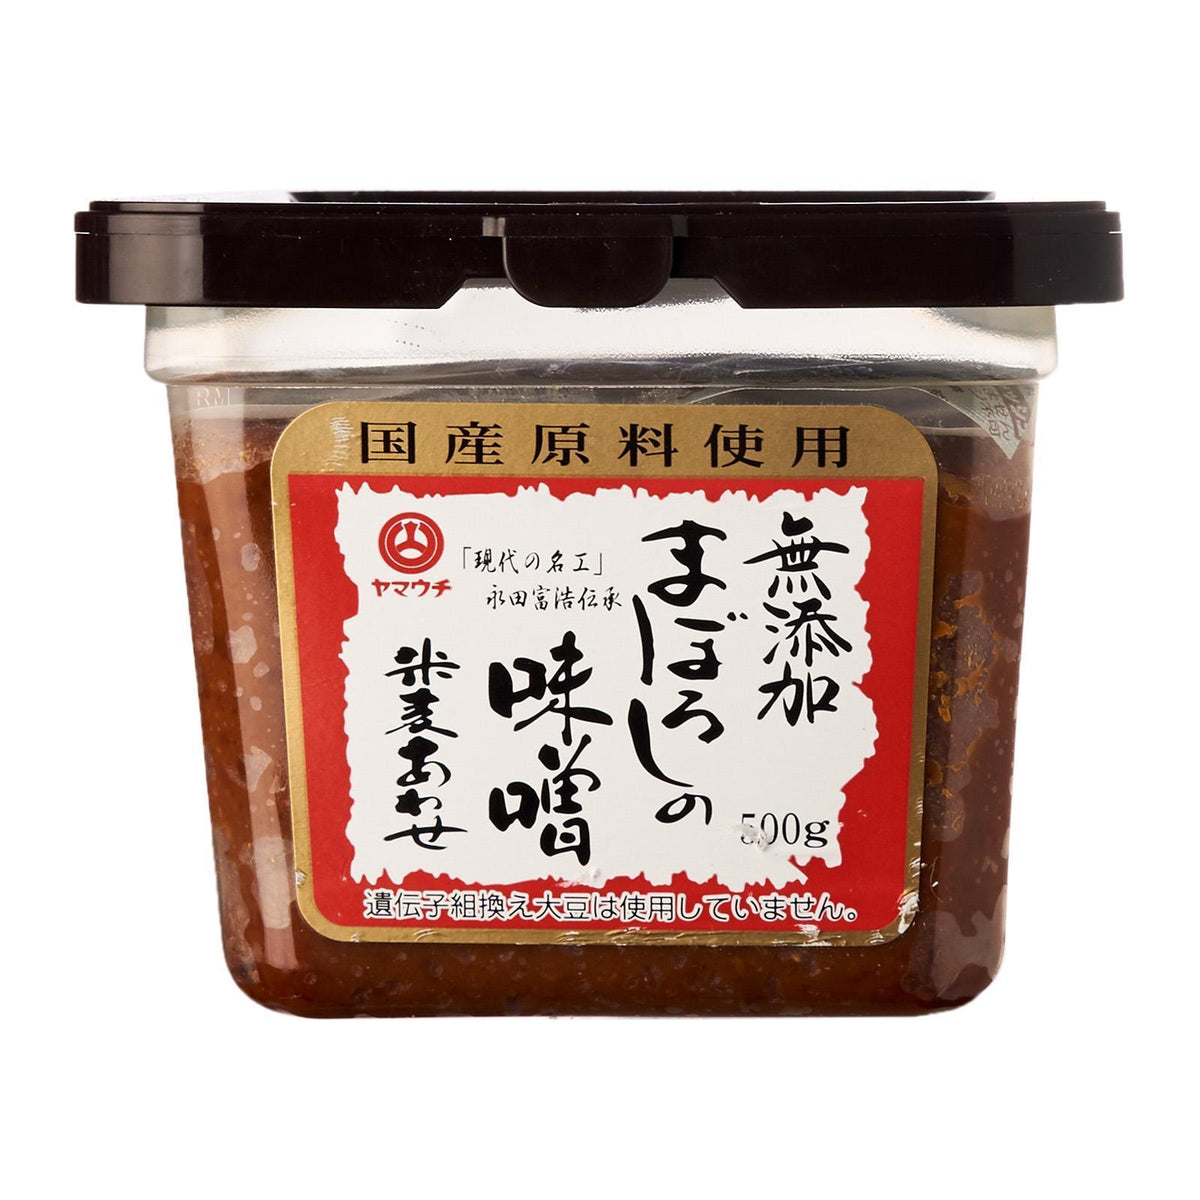 無添加まぼろしの米麦あわせ味噌 Maboroshi Mutenka Kome Mugi Awase Miso 500g — Honeydaes - Japan  Foods Grocery Online